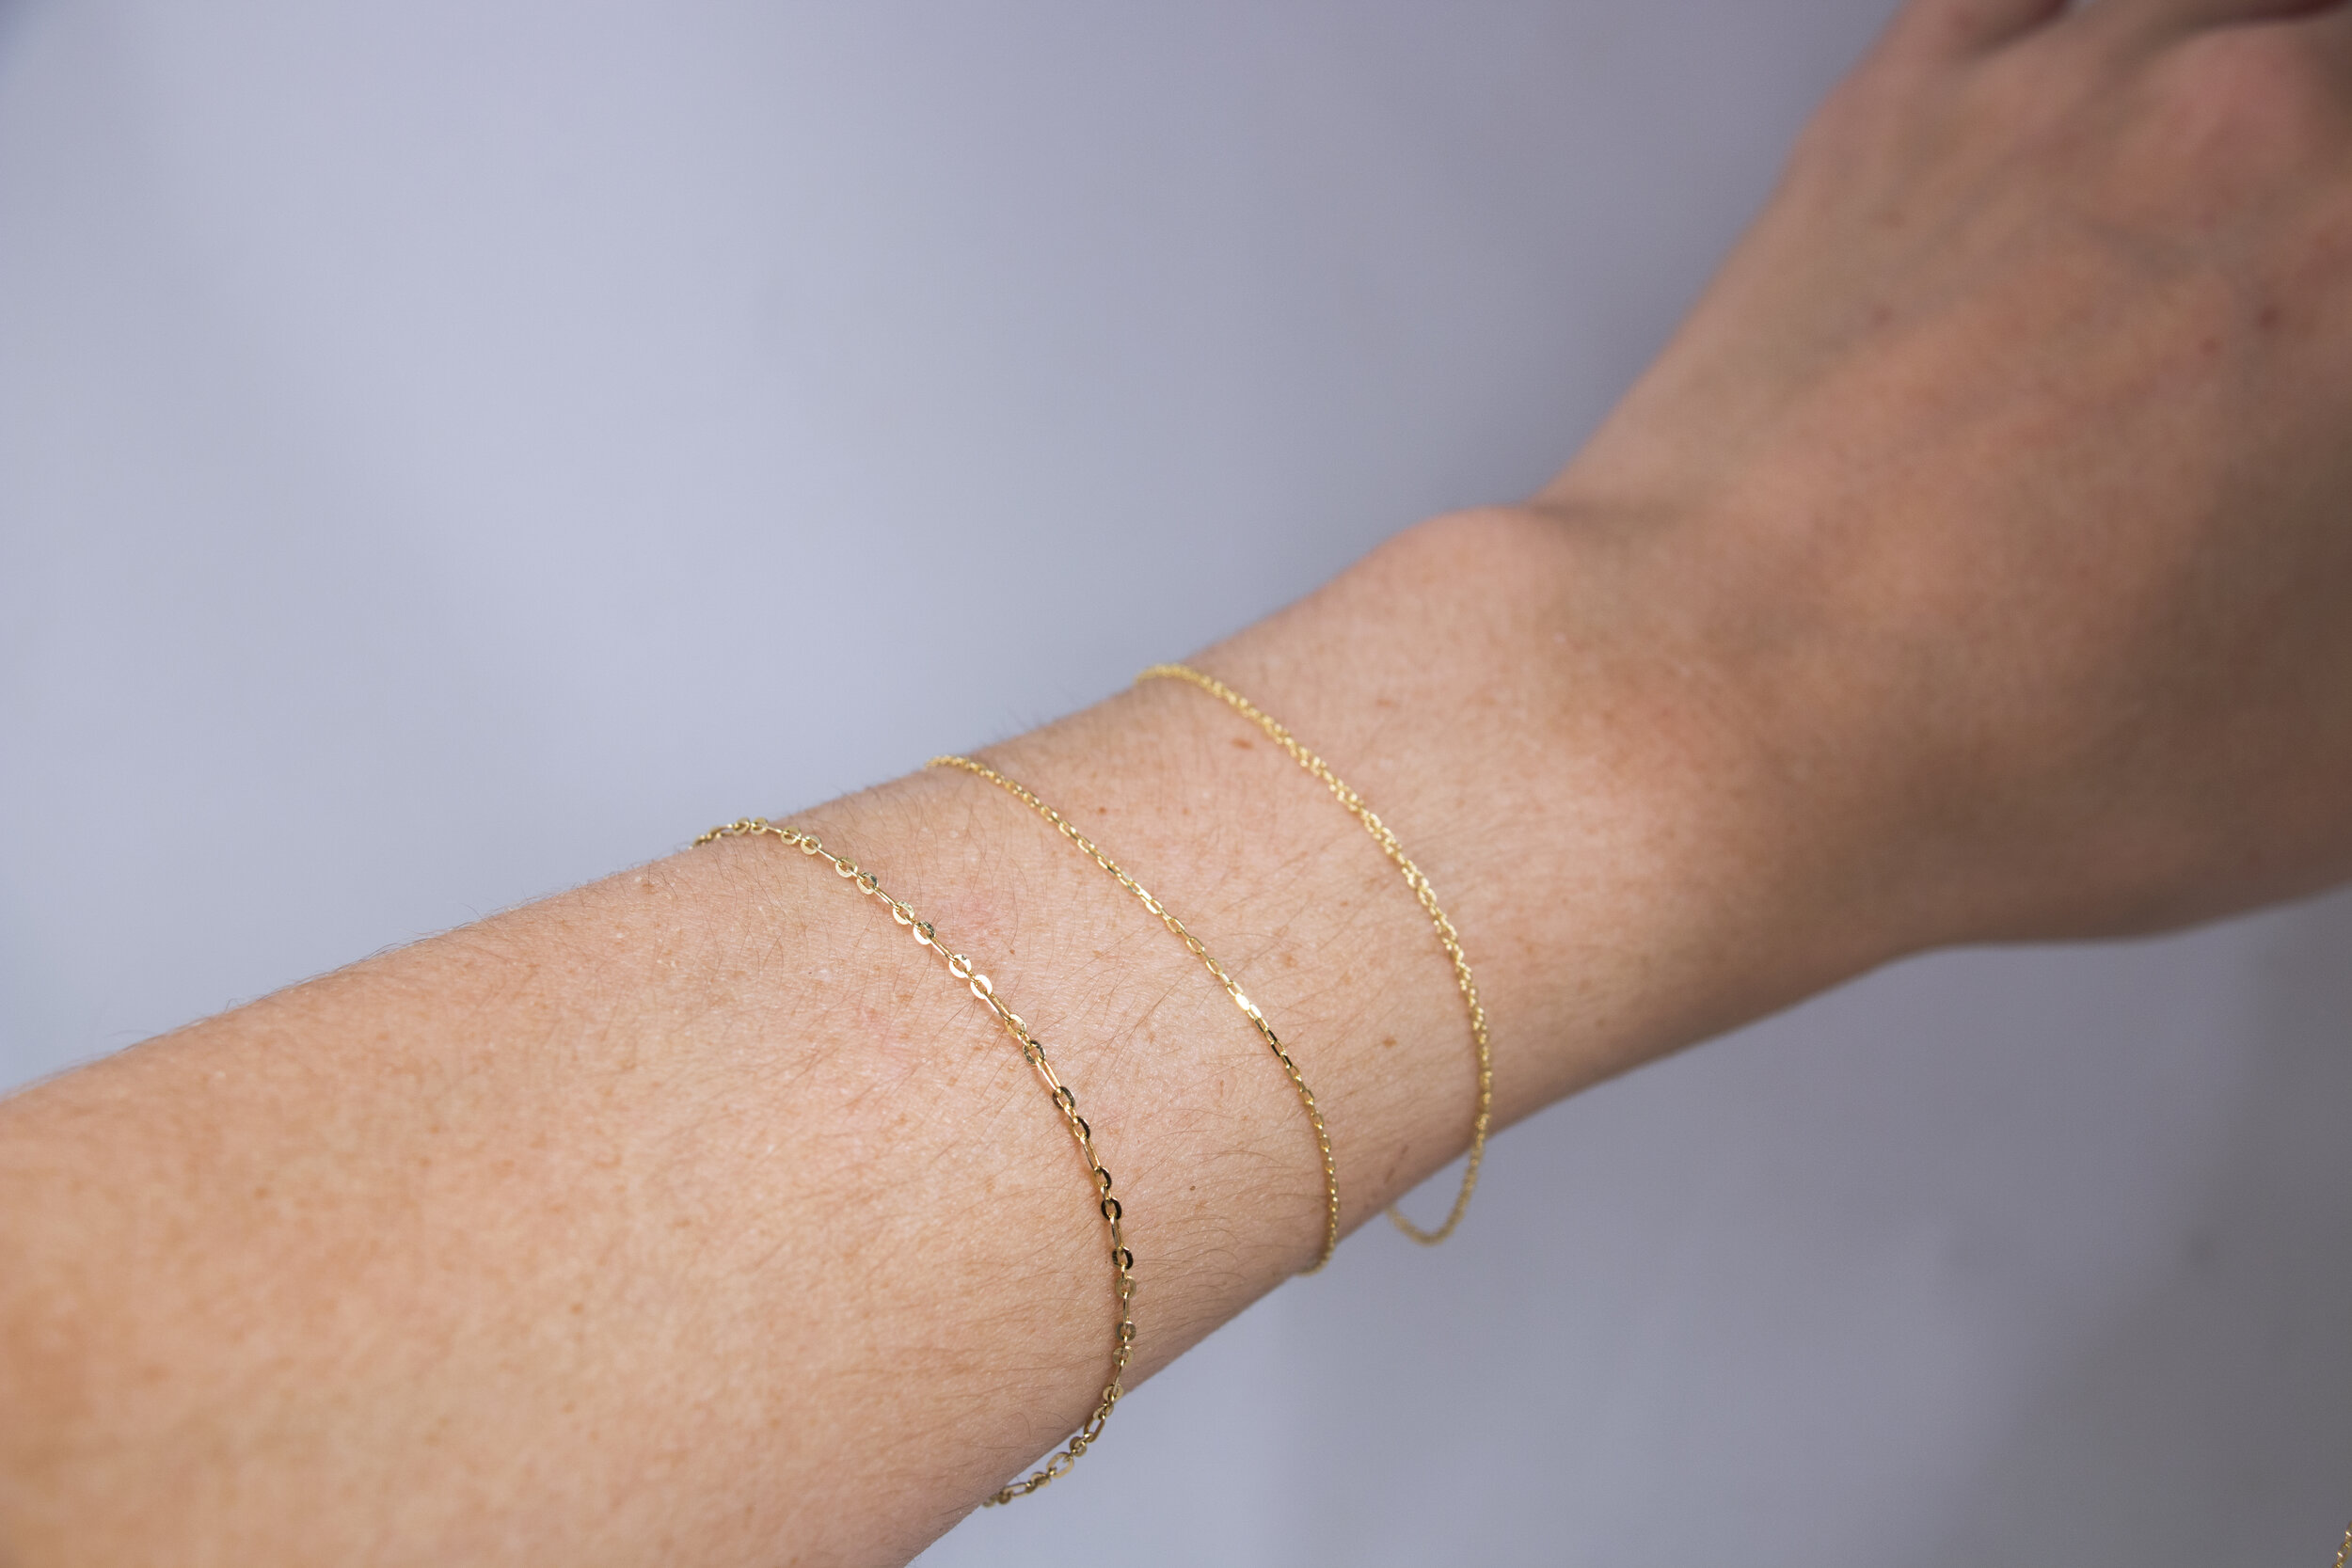 Get an Eternal Bracelet Welded Onto Your Wrist! — YAH YAH